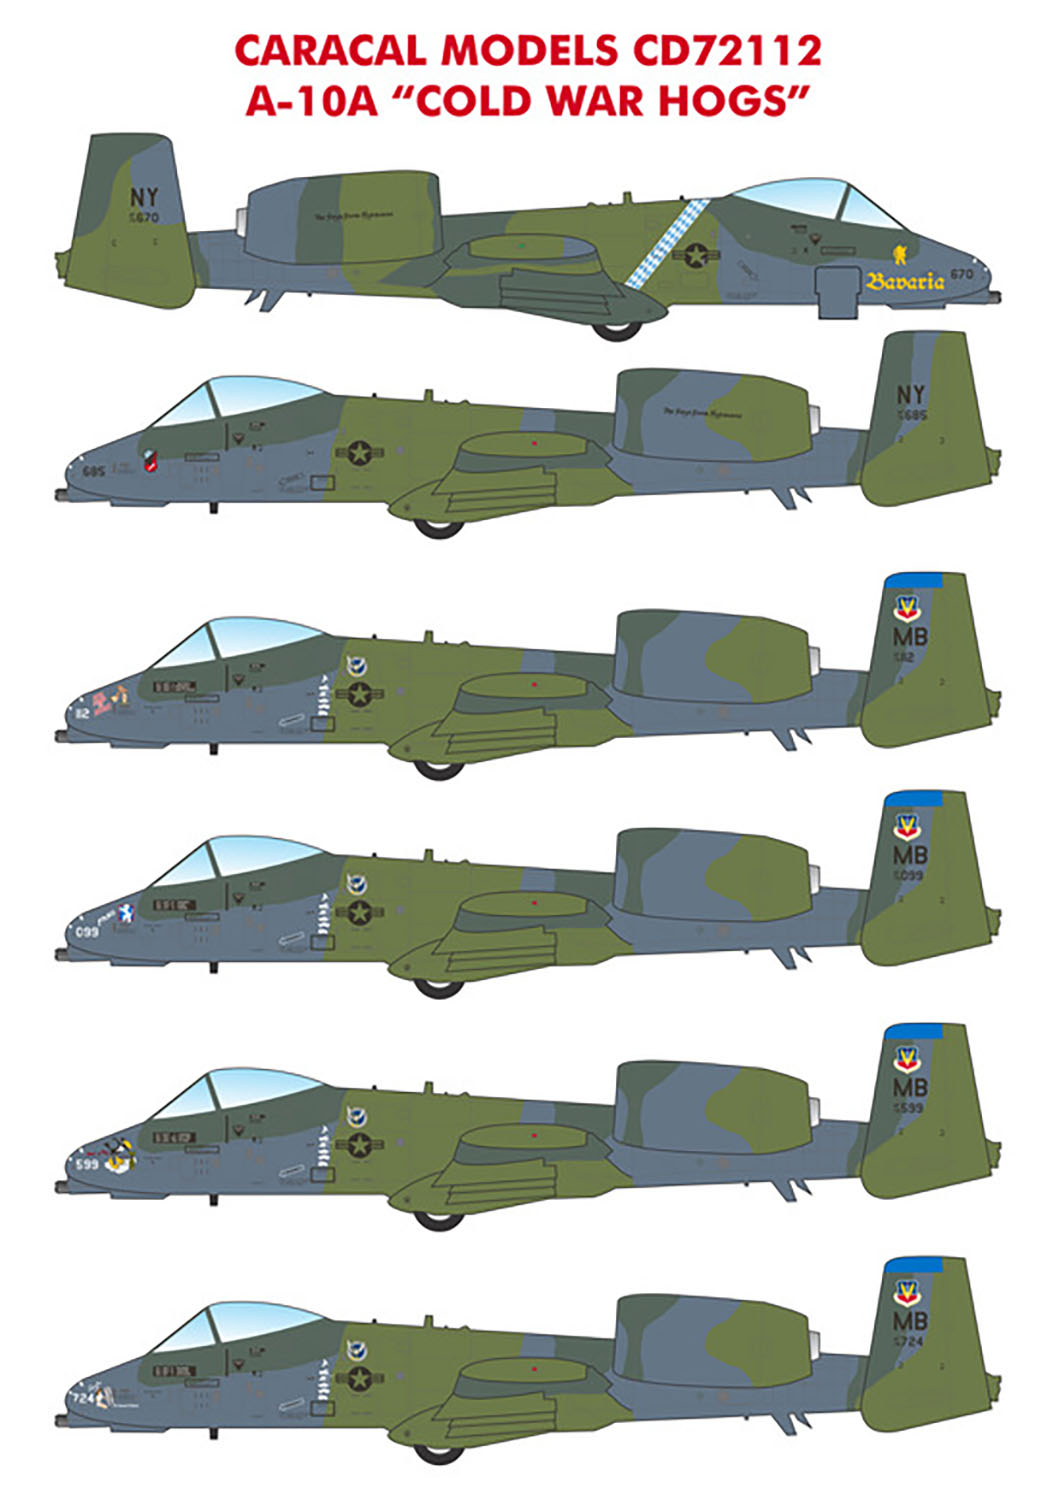 カラカルモデル 1/72 アメリカ空軍 A-10A コールド・ウォーホッグ デカール CD72112